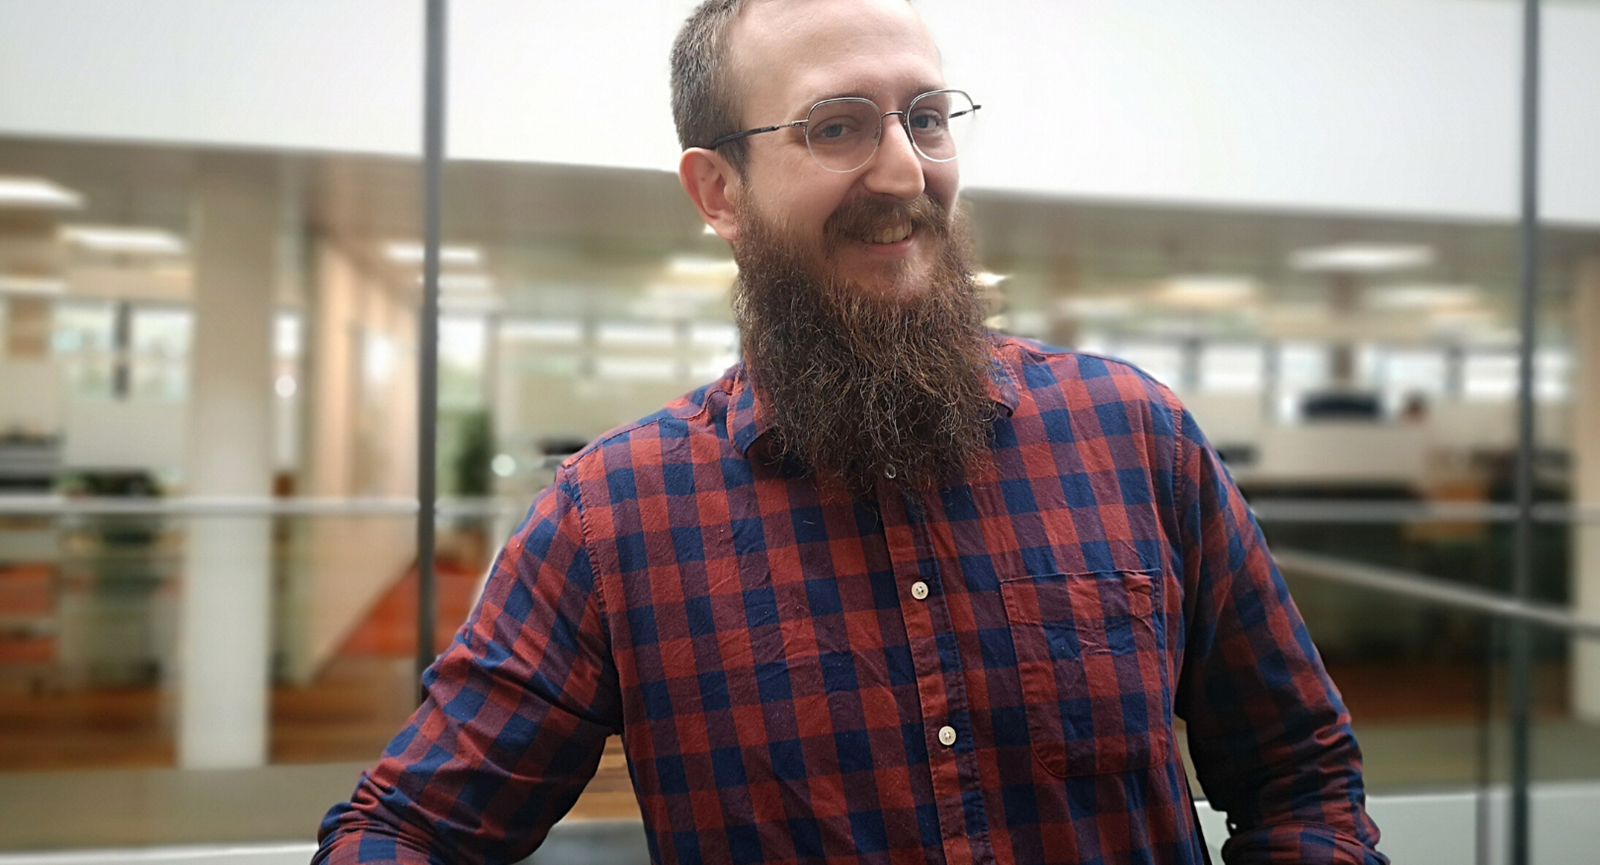 Softwareudvikler Andreas Jensen, der har læst i Grenaa på Dania Games, smiler, fordi han har fået verdens bedste job